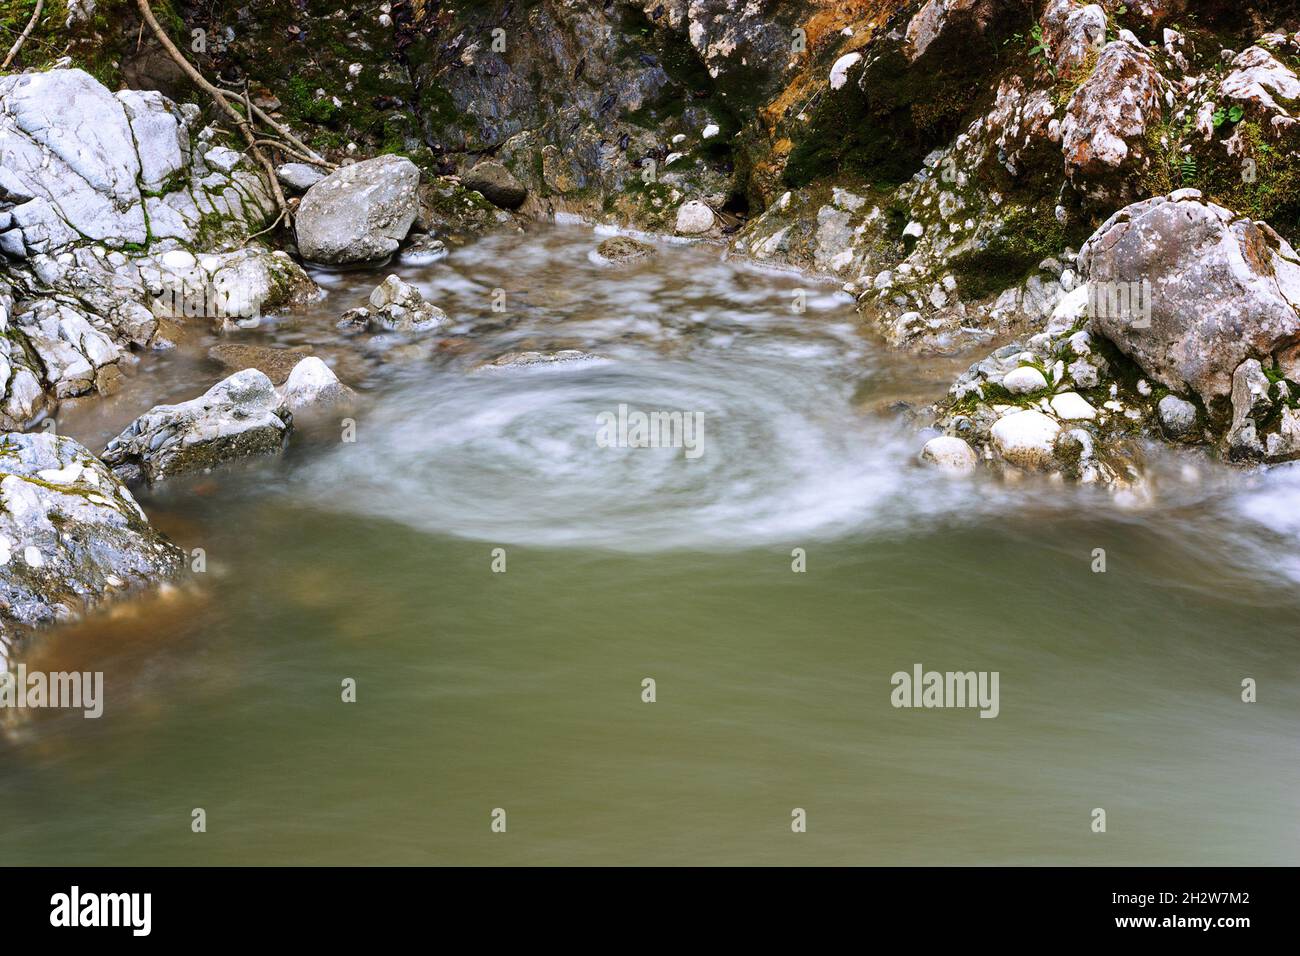 vortex forming on a mountain stream, image taken in Apuseni mountains, Transilvania Stock Photo